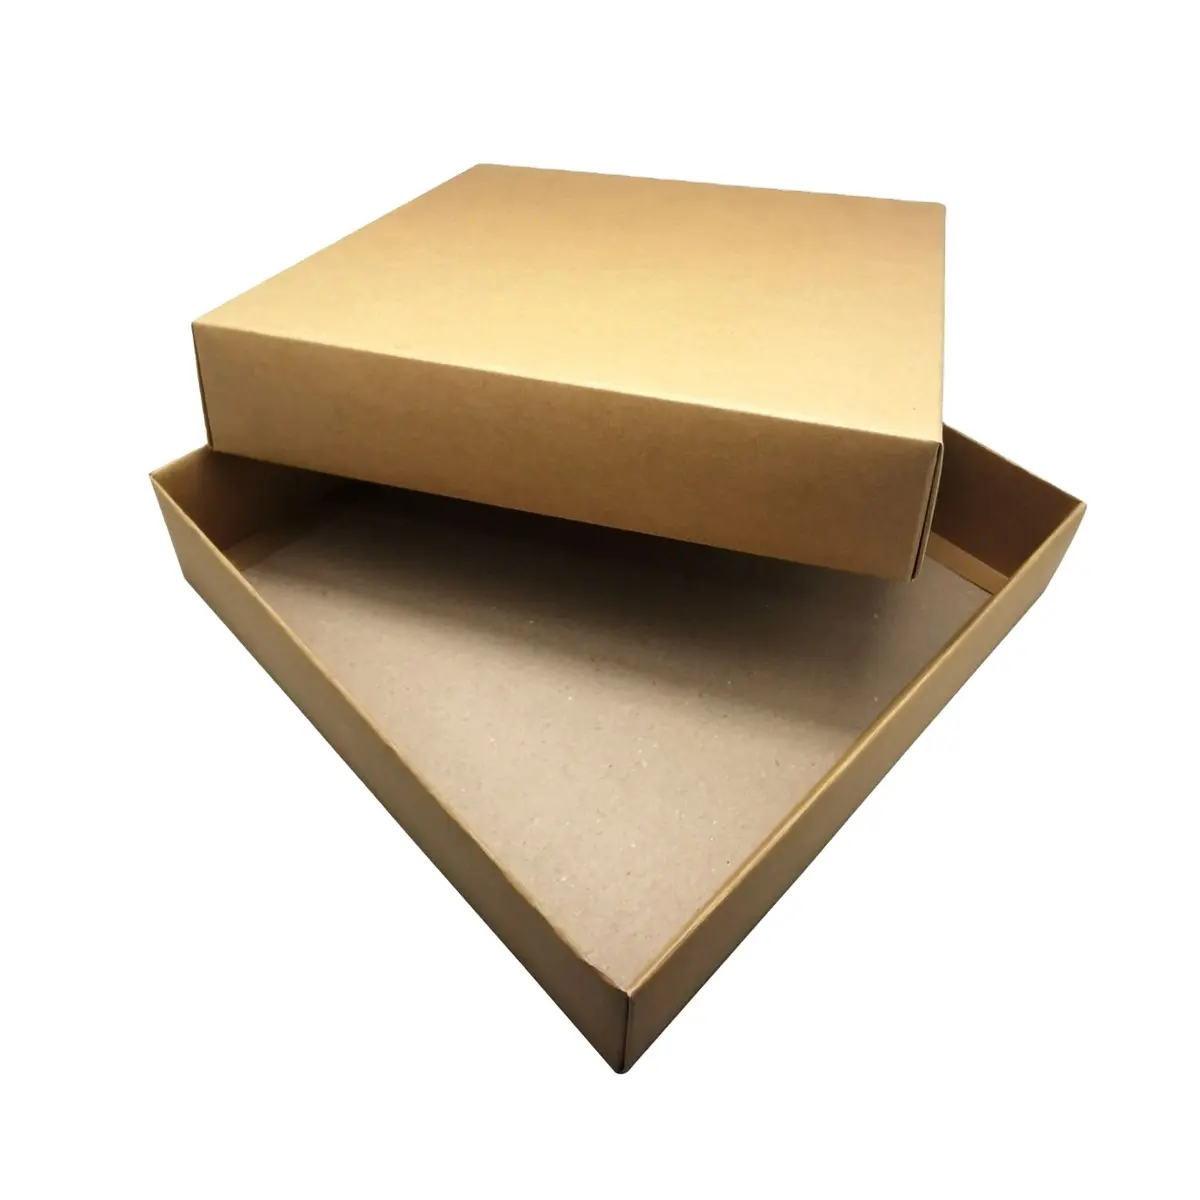 กล่องของขวัญผลิตจากกระดาษแข็งผลิตจากเวียดนาม